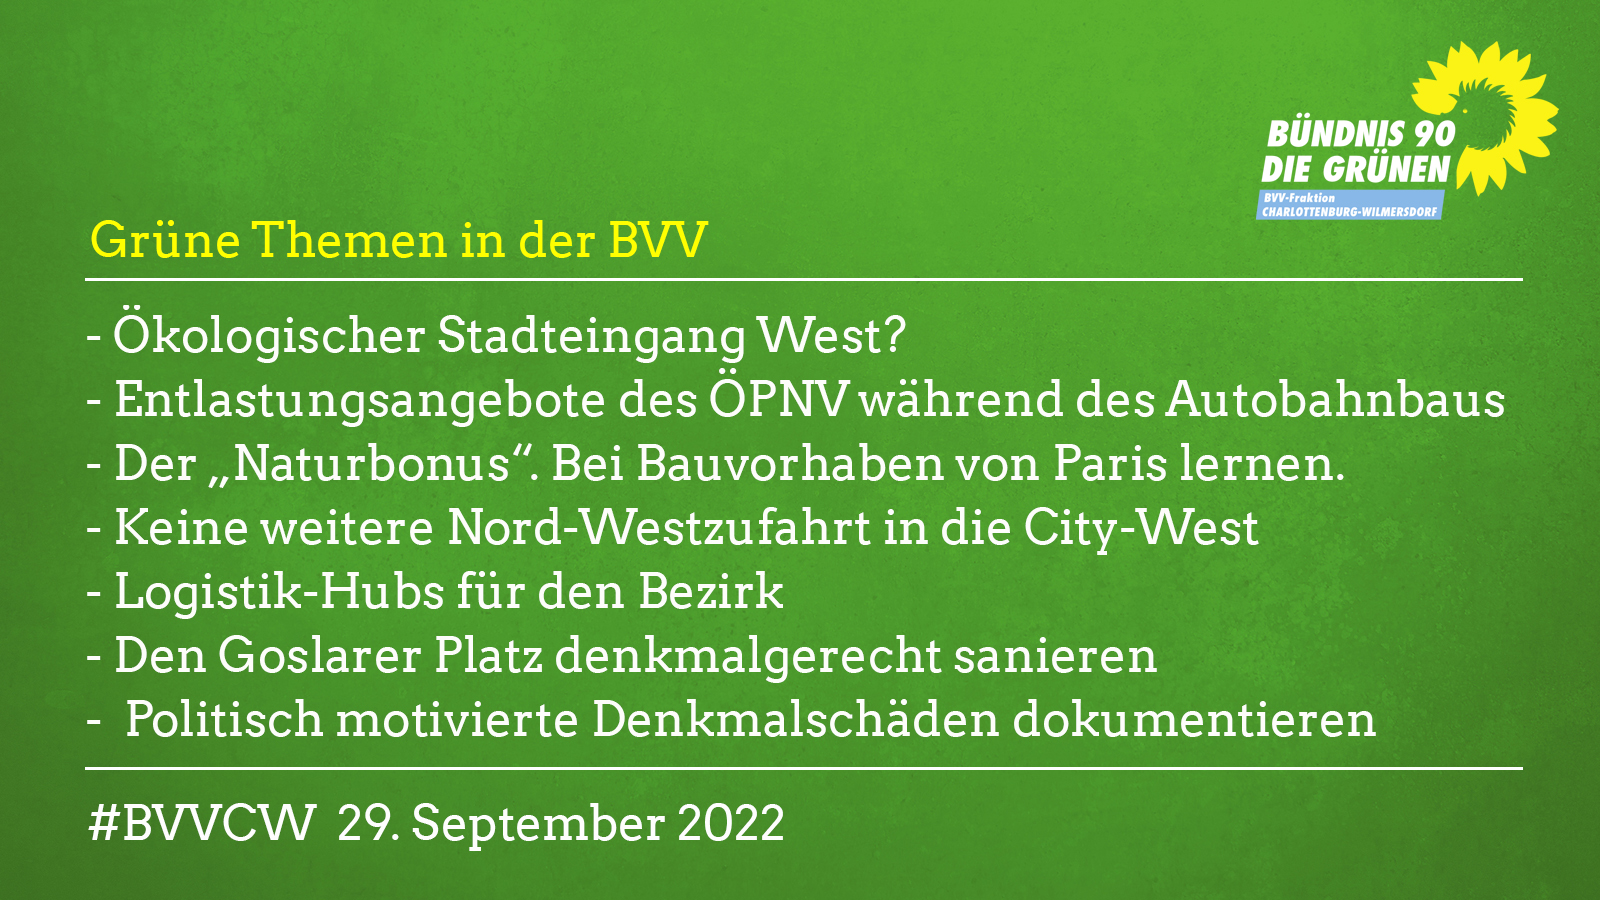 Grüne Themen in der BVV am 29.9.2022